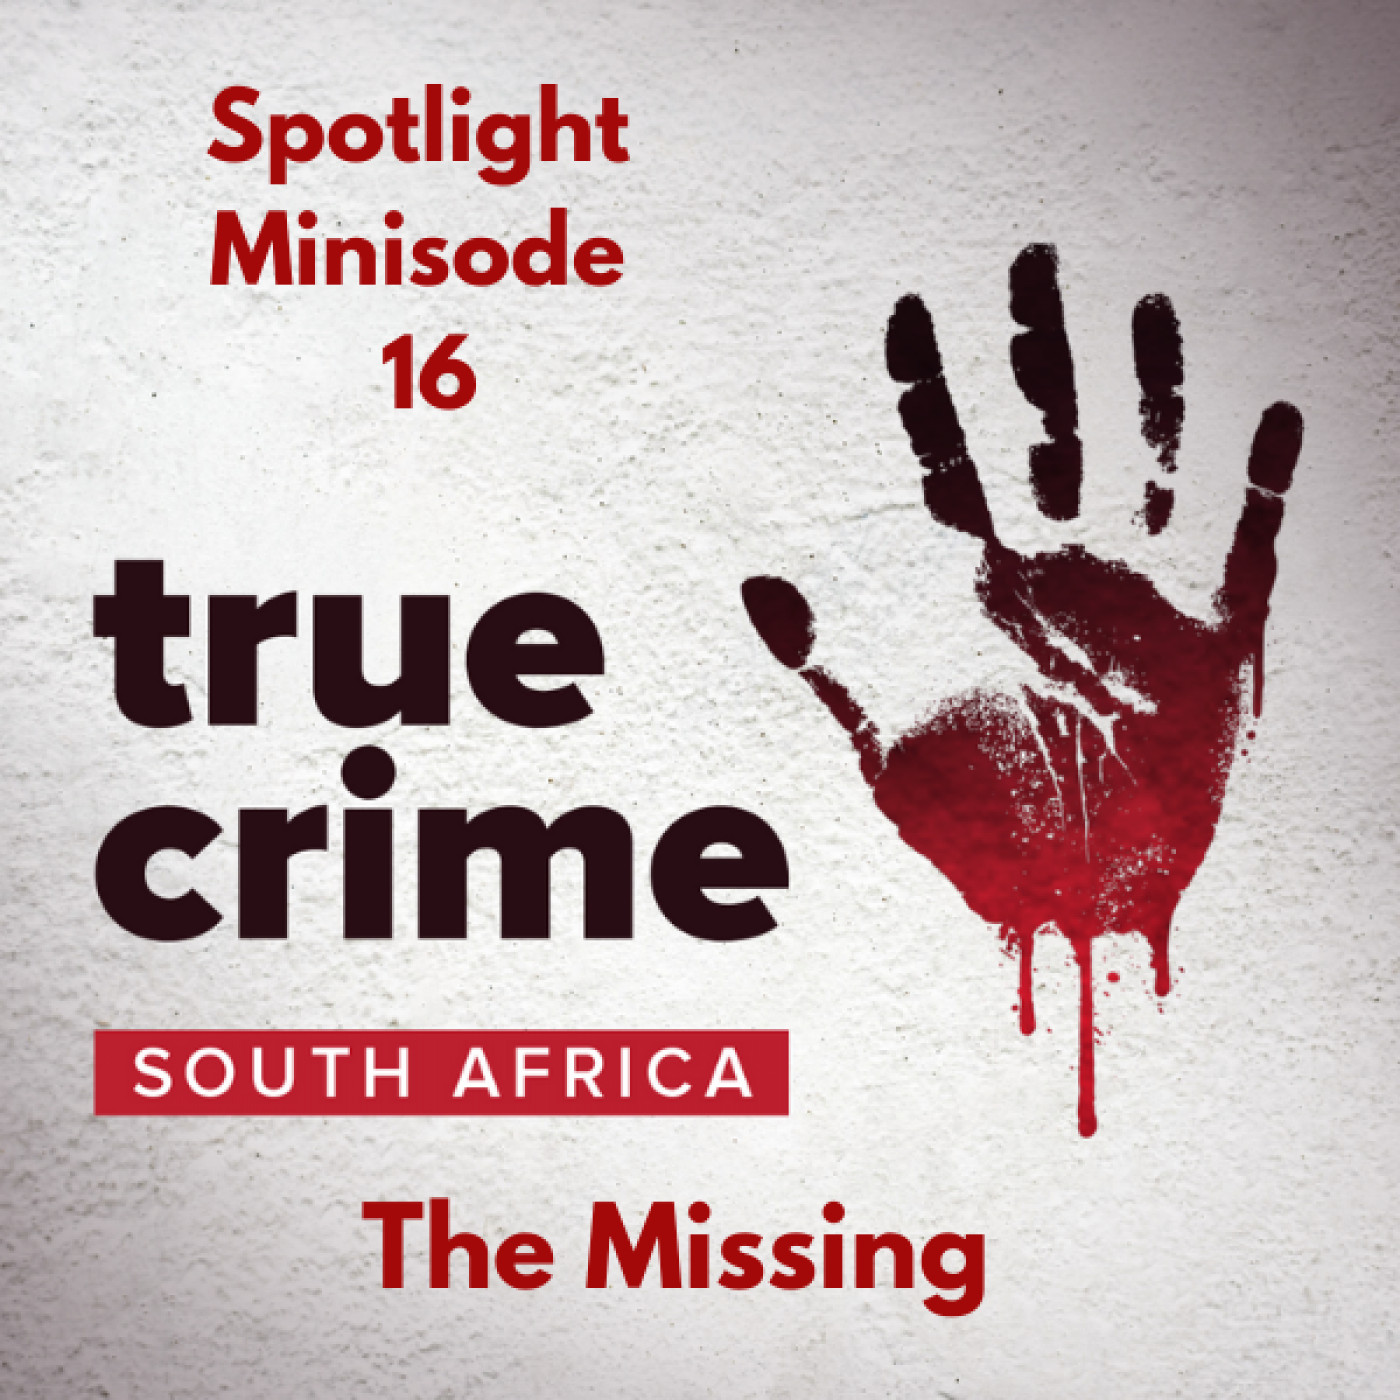 Spotlight Minisode: The Missing